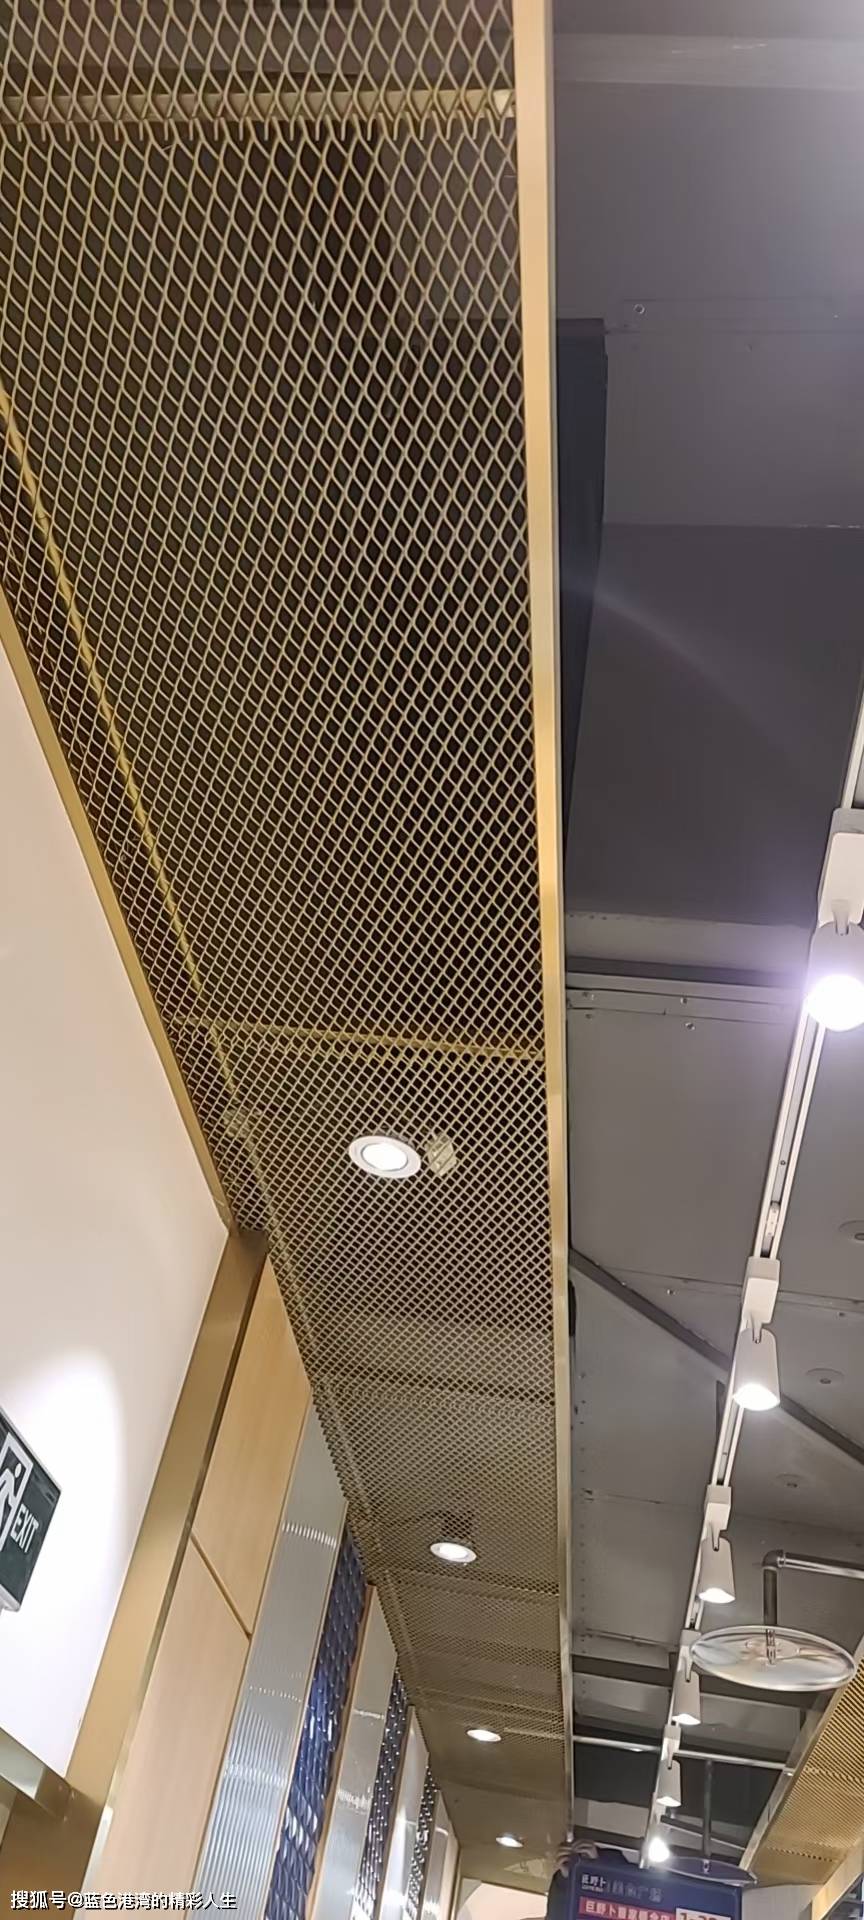 吊顶钢板网@安平炅盛吊顶装饰钢板网厂家带您了解它的使用场景